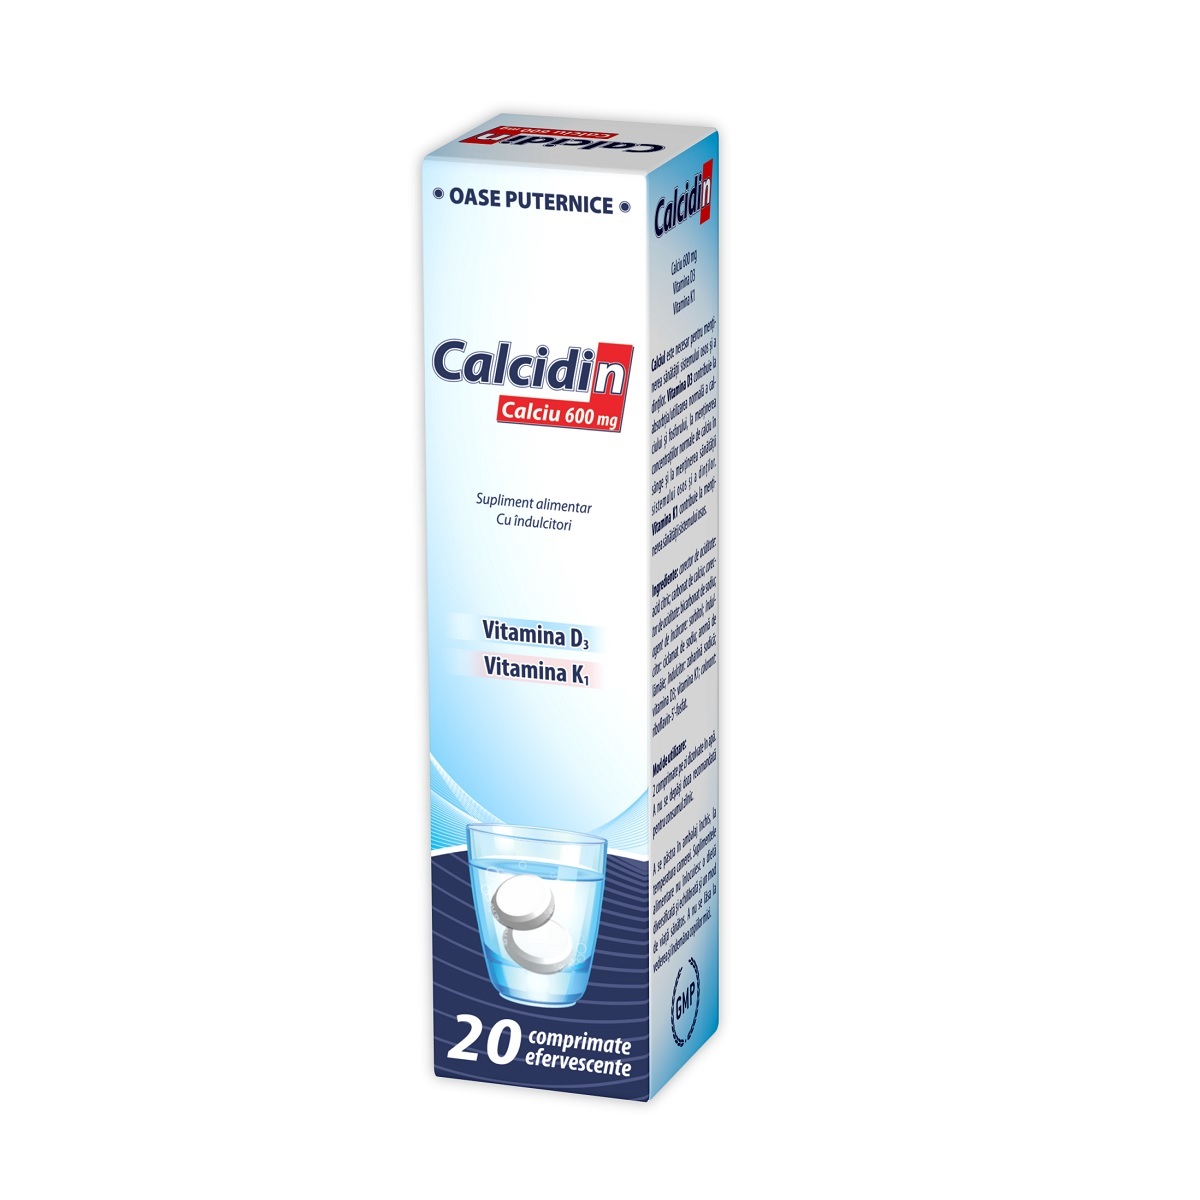 Multivitamine si minerale - Zdrovit Calcidin x 20 comprimate efervescente, medik-on.ro